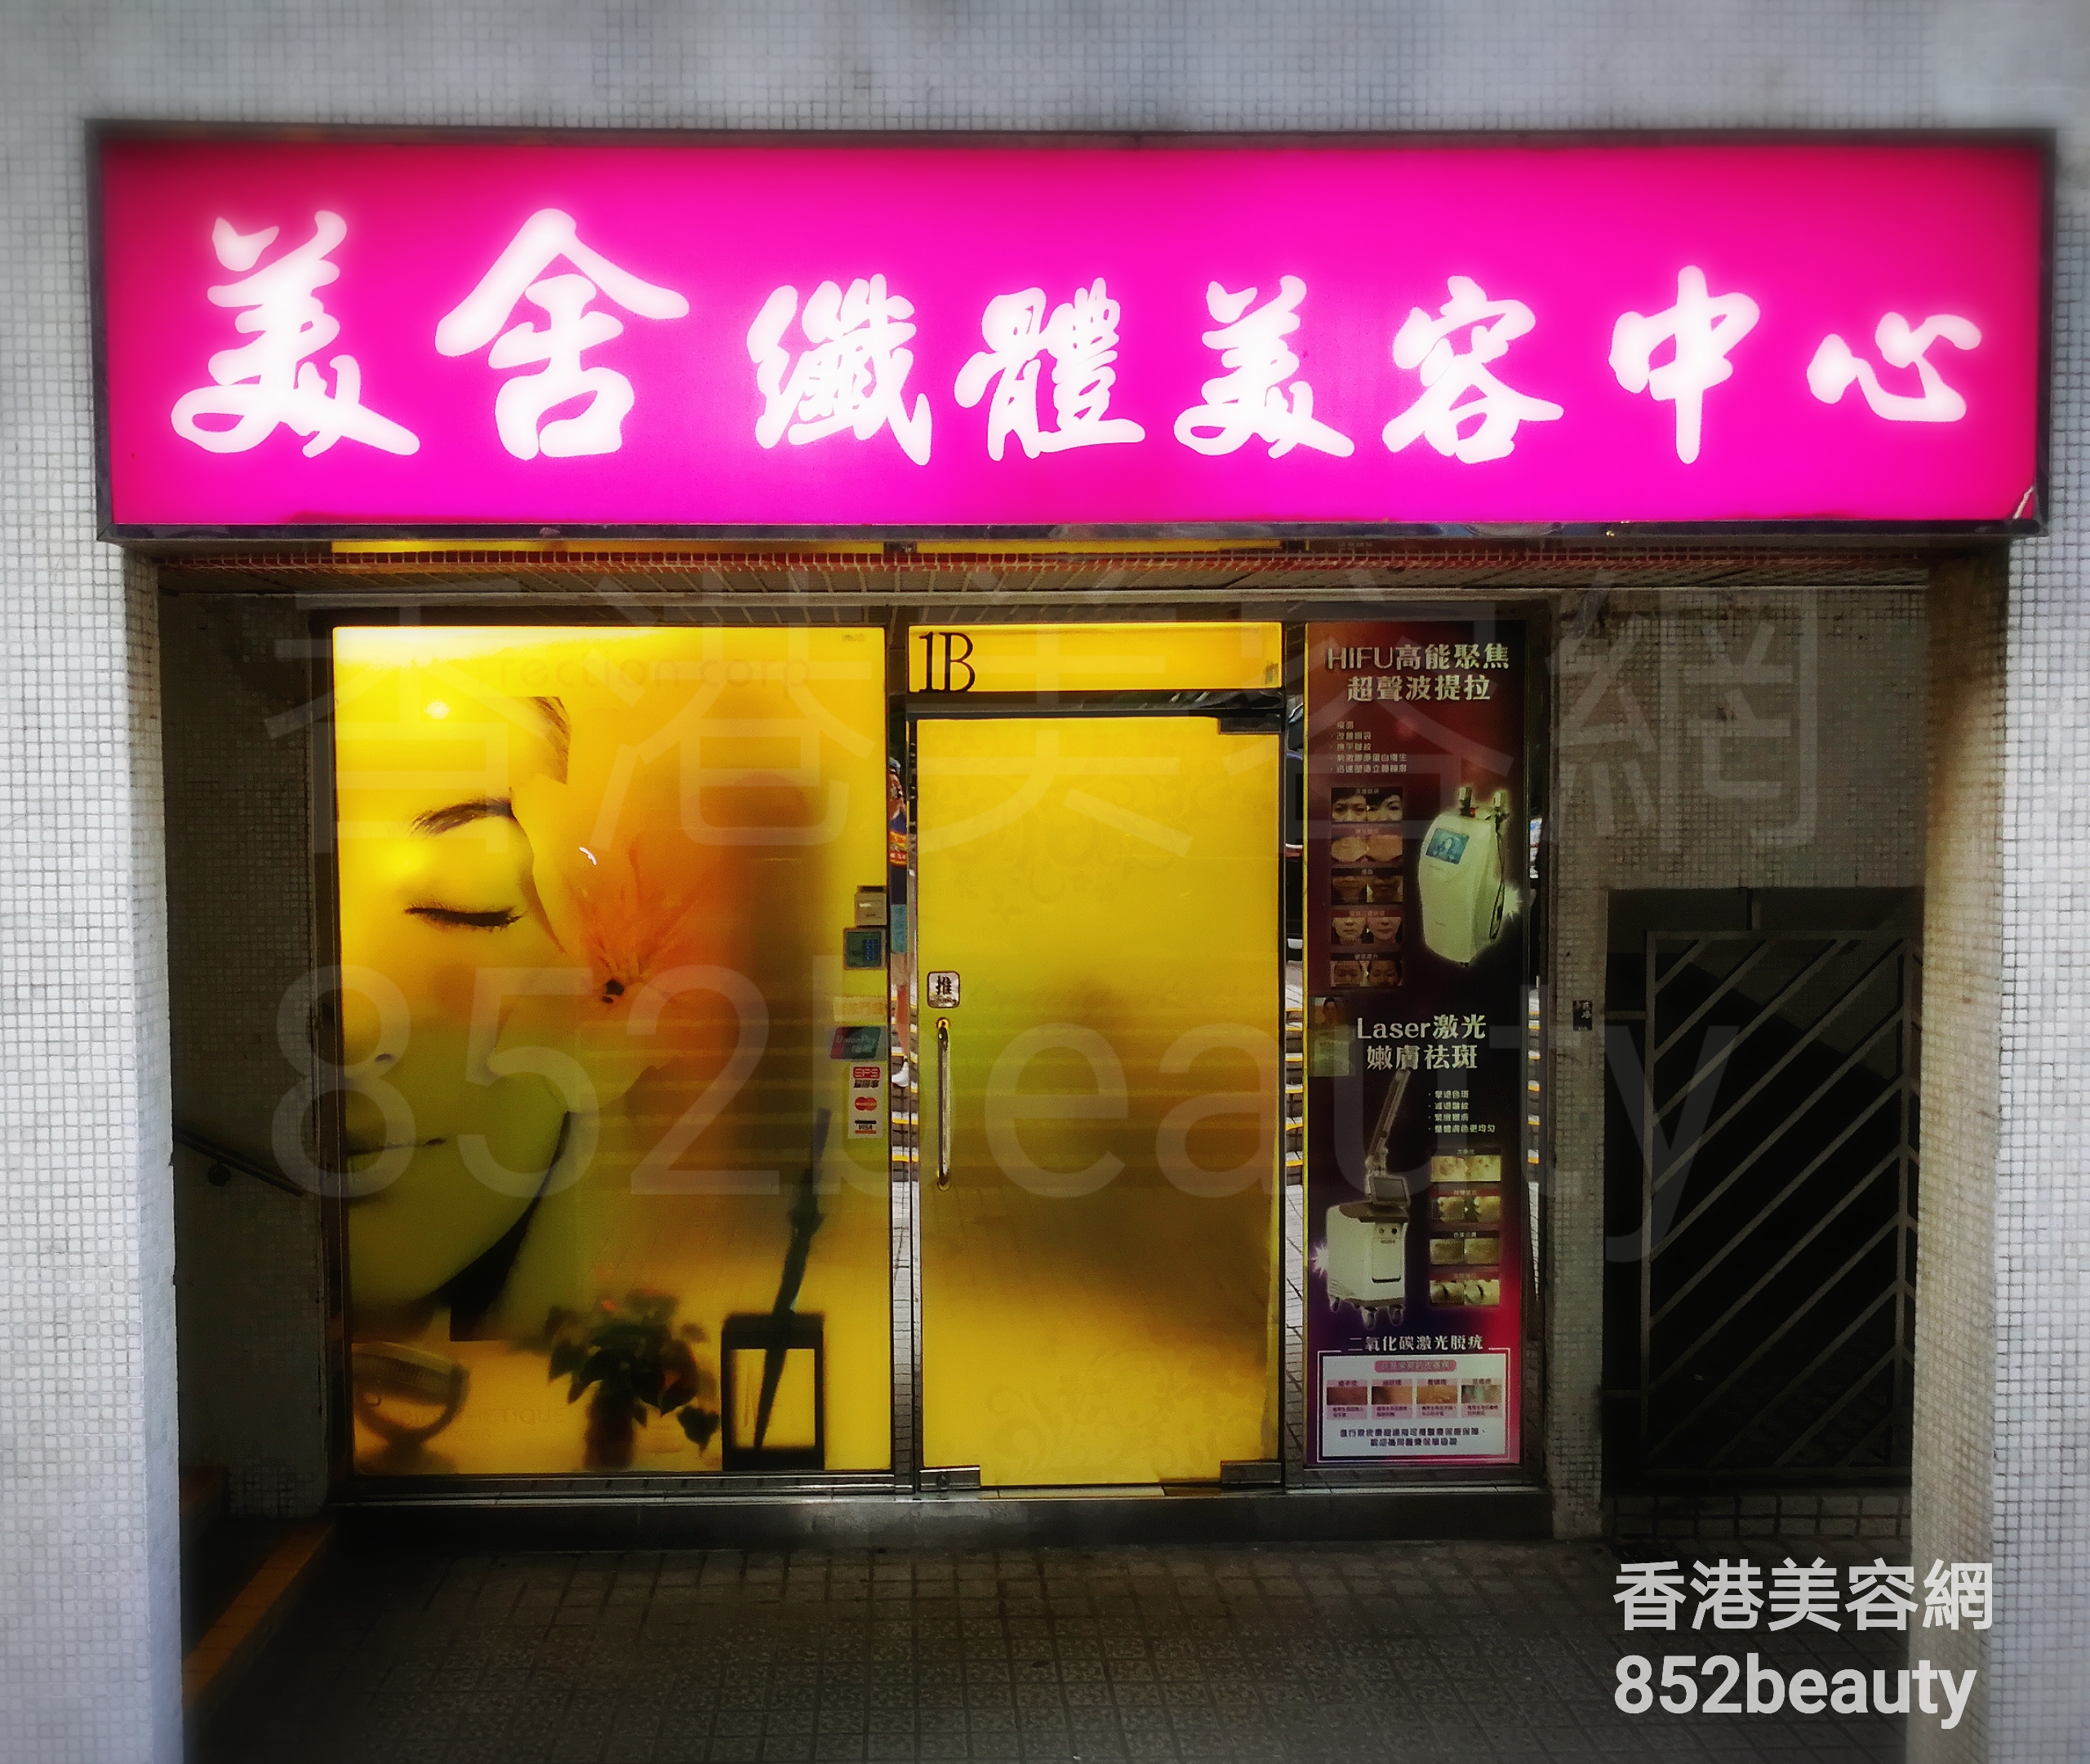 香港美容網 Hong Kong Beauty Salon 美容院 / 美容師: 美舍 纖體美容中心